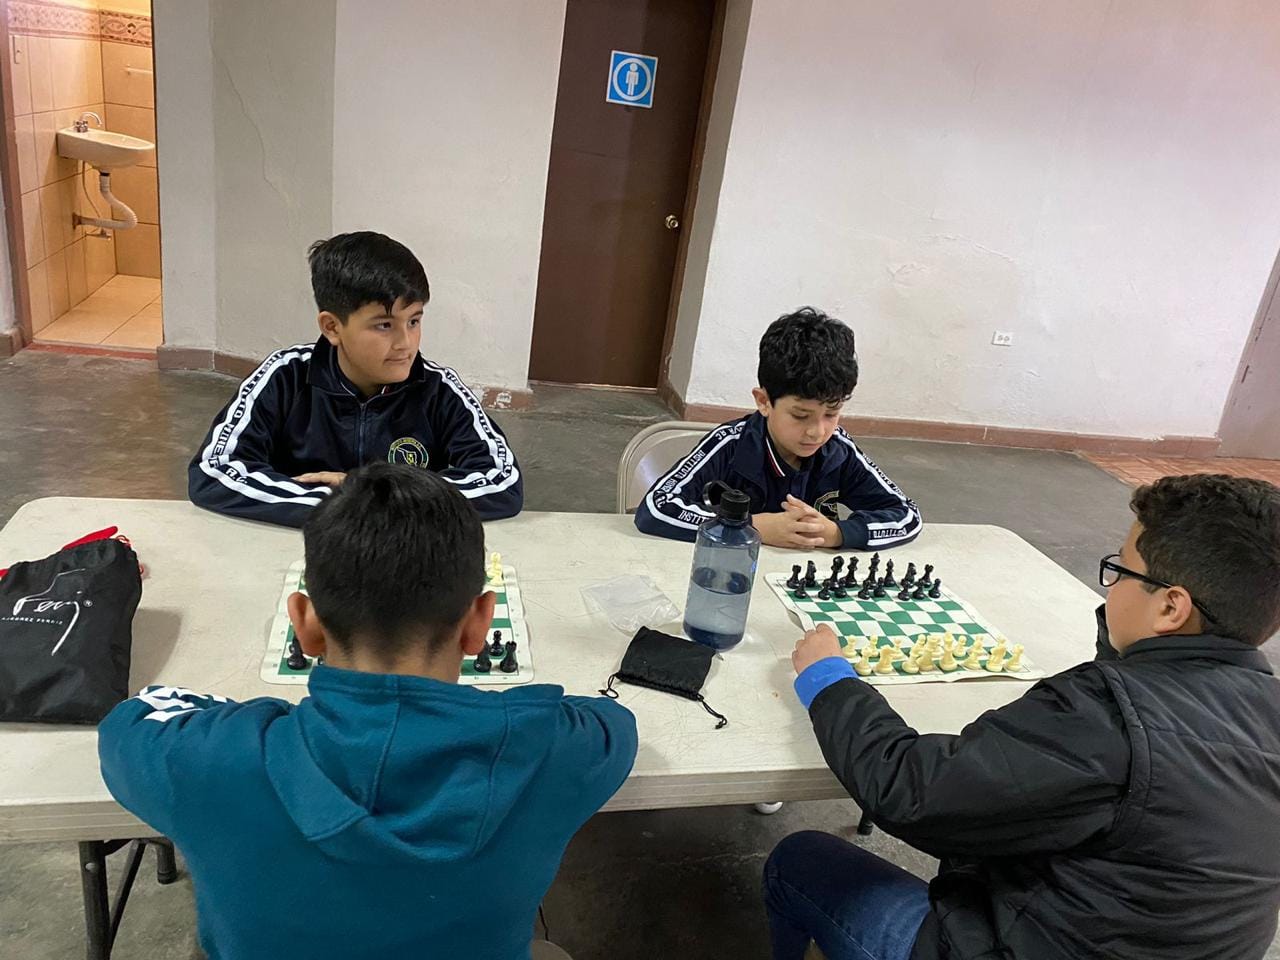 Representarán alumnos del Instituto Minerva a Cananea en estatal de ajedrez en Hermosillo